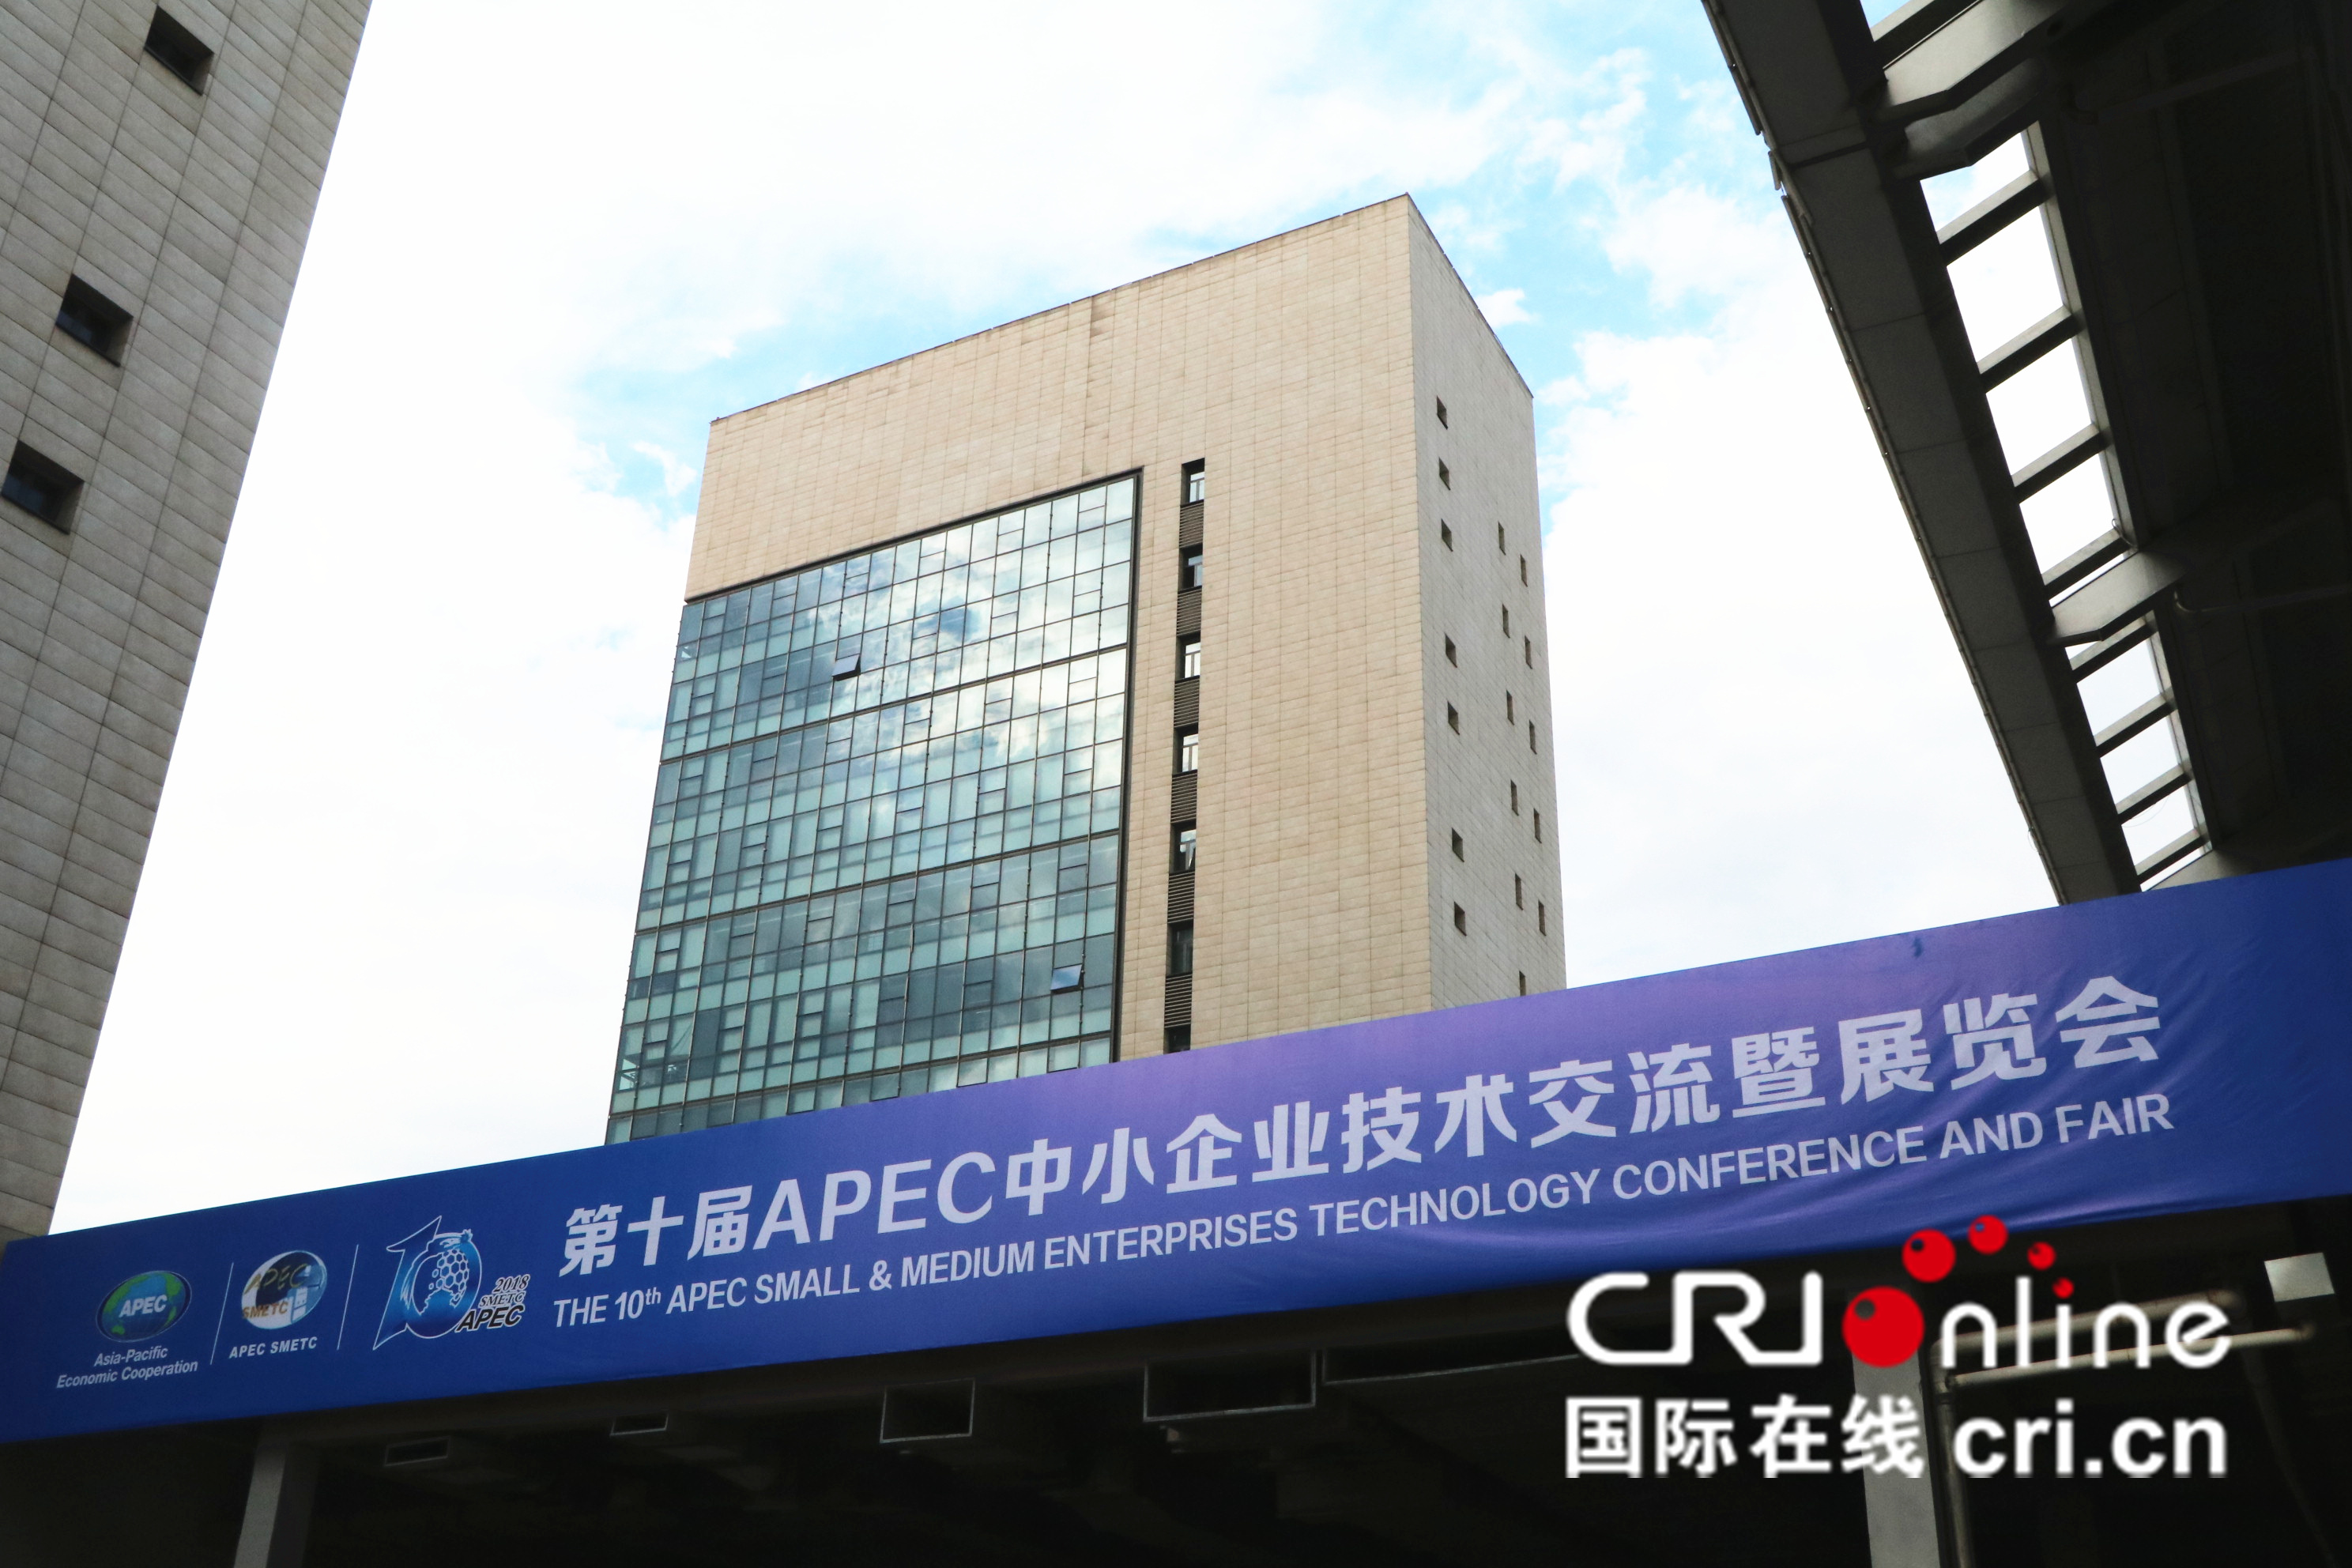 第十屆APEC技展會,致力於加強APEC成員經濟體的技術交流和經貿合作,推動APEC中小企業創新發展與合作共贏。瀋陽作為建設國家全面創新改革試驗區,將借此機會努力構建APEC中小企業的科技交流載體和國際合作平臺。_fororder_第十屆APEC技展會,致力於加強APEC成員經濟體的技術交流和經貿合作,推動APEC中小企業創新發展與合作共贏。瀋陽作為建設國家全面創新改革試驗區,將借此機會努力構建APEC中小企業的科技交流載體和國際合作平臺。